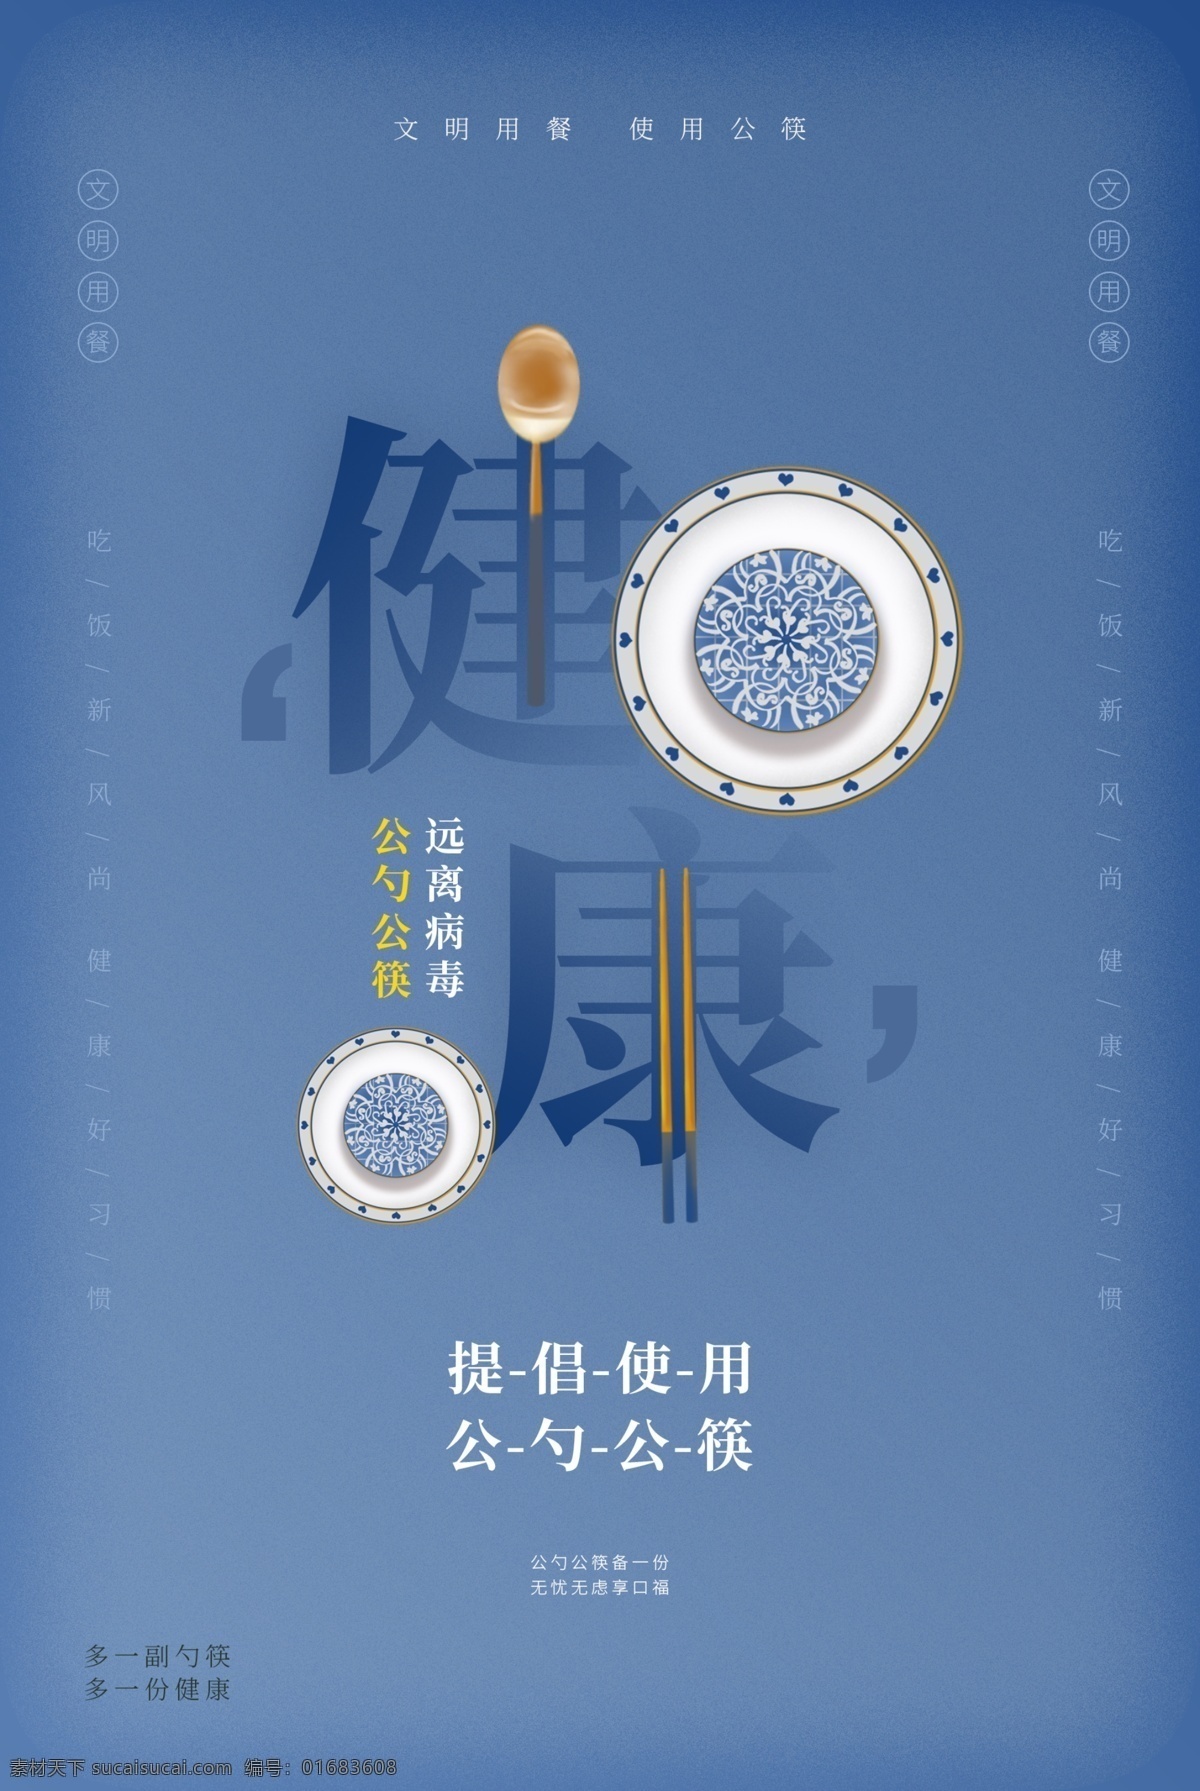 公 勺 筷 社会 公益 宣传 活动 海报 公勺公筷